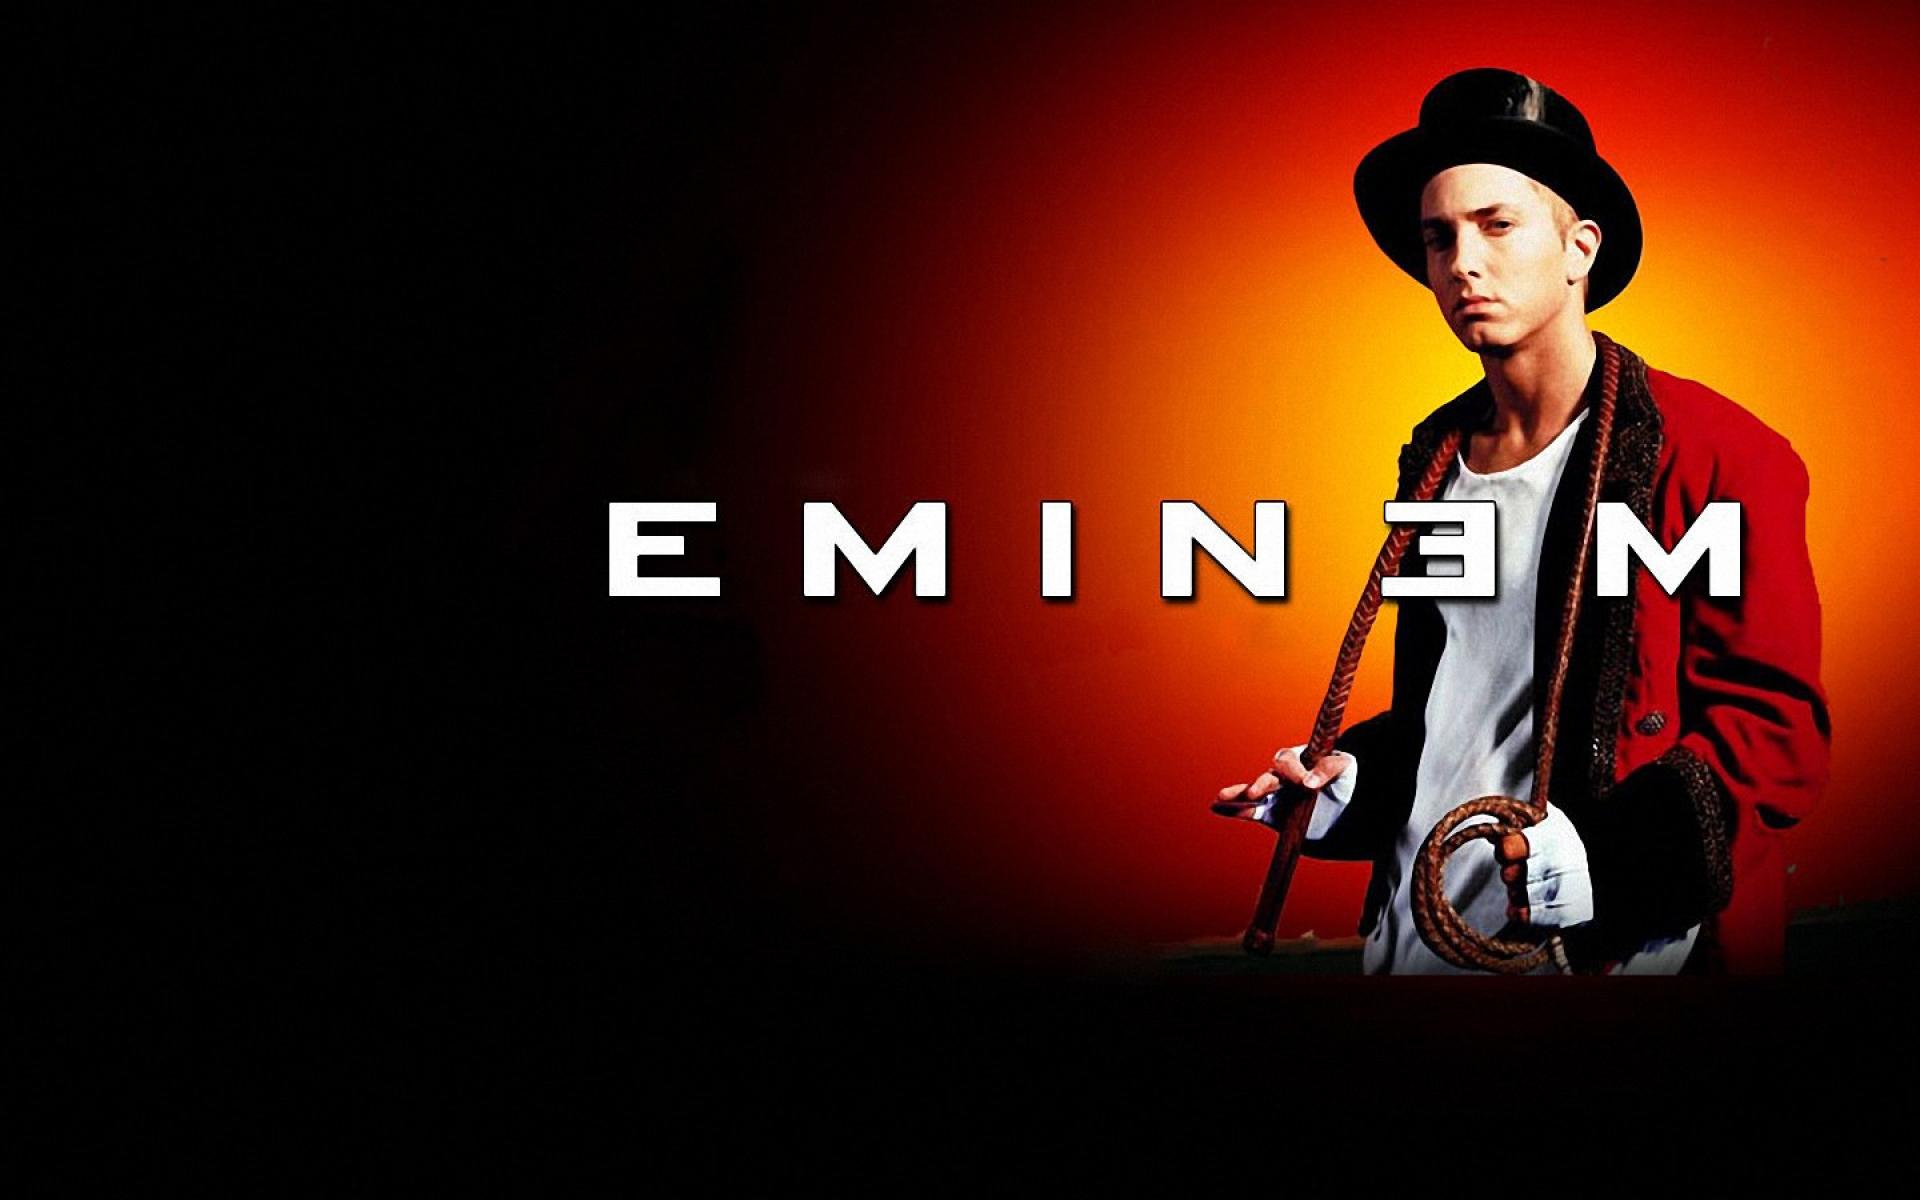 Eminem iPhones Wallpaper Desktop Background For